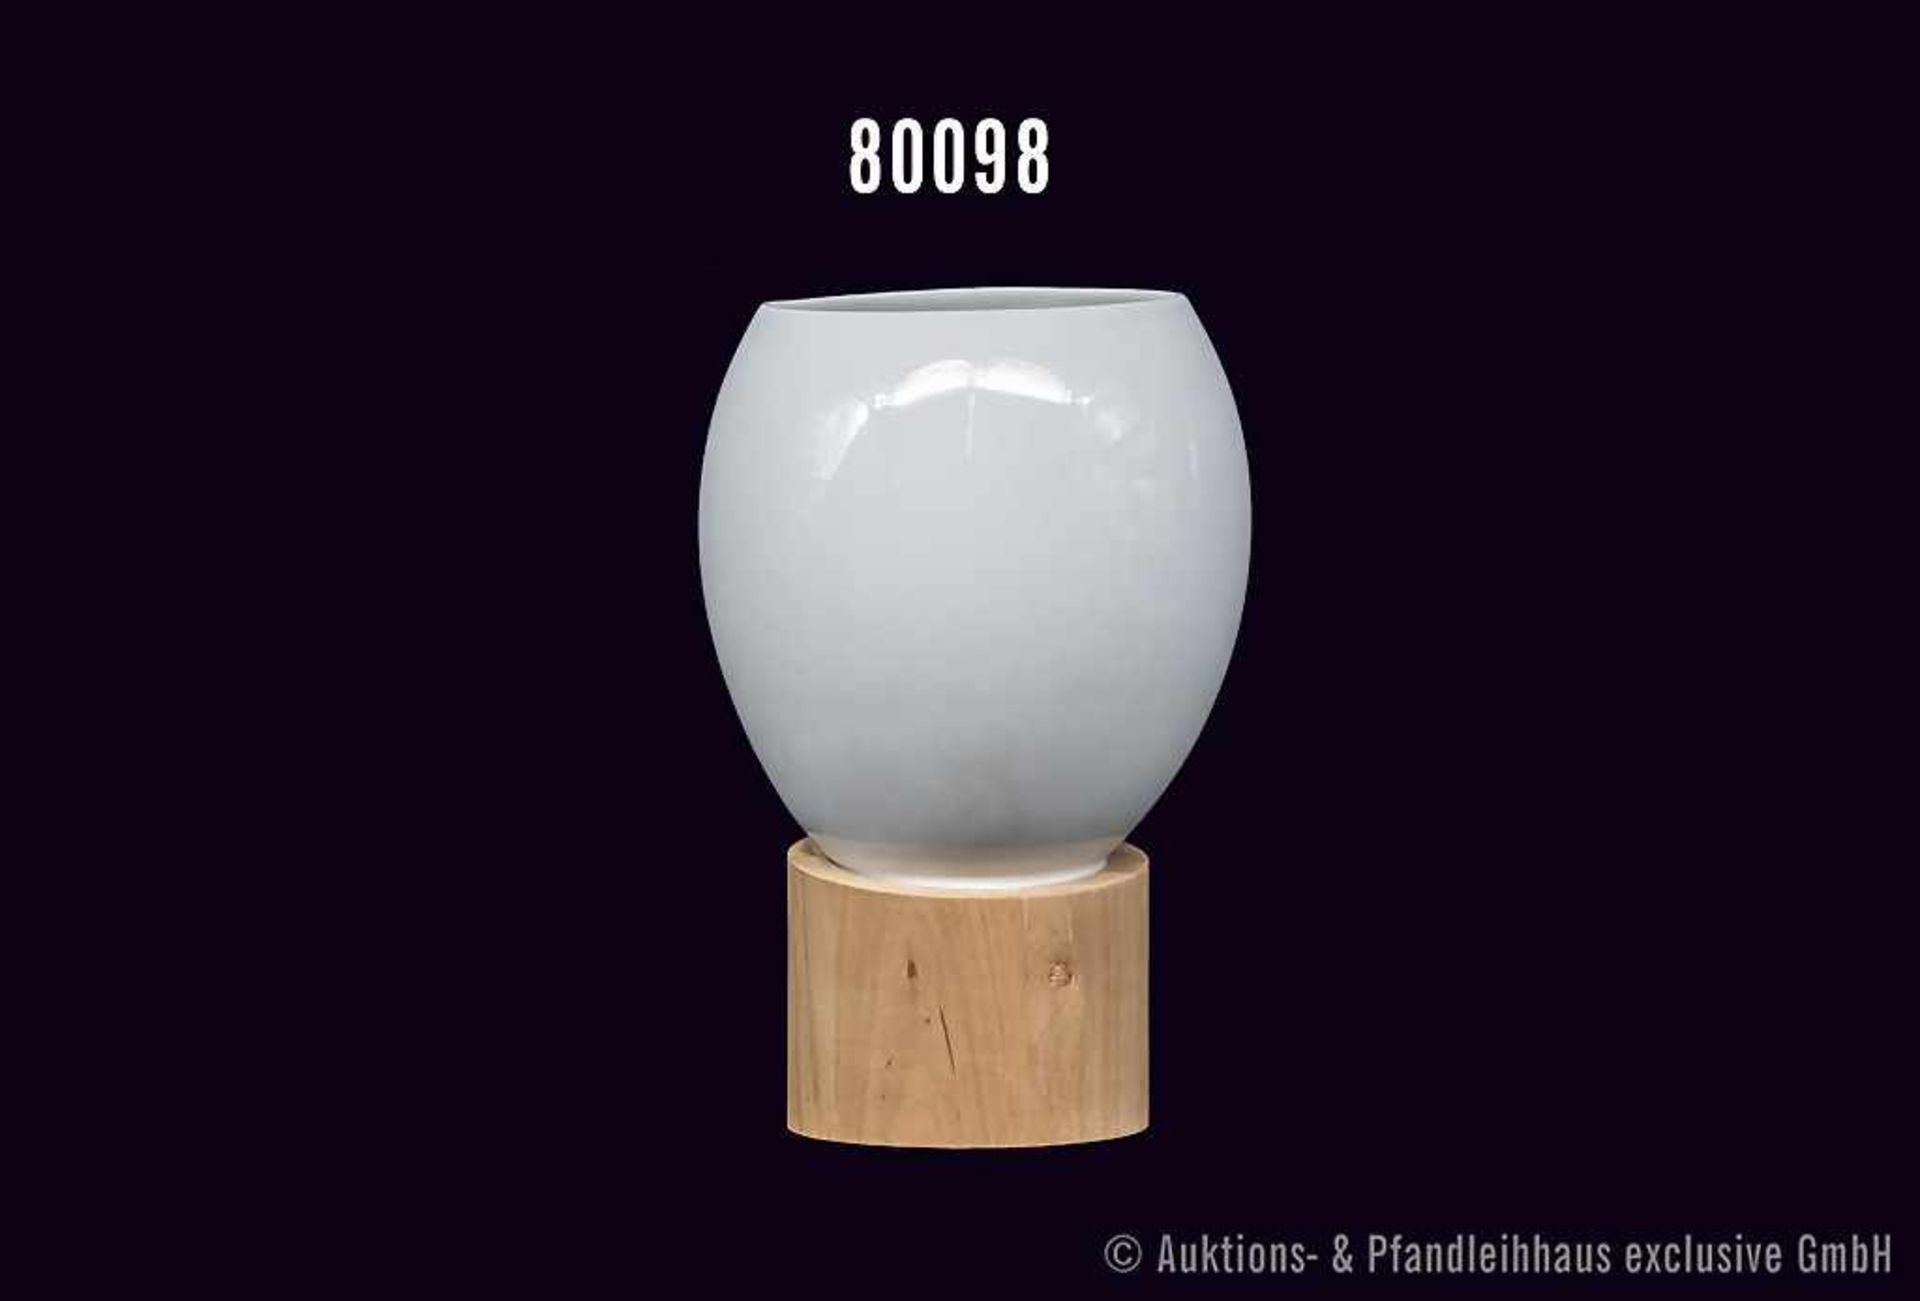 Rosenthal Porzellan Vase, studio-linie, Serie Suomi, Dekor Pure Nature, H 21 cm, mit Holzfuß,